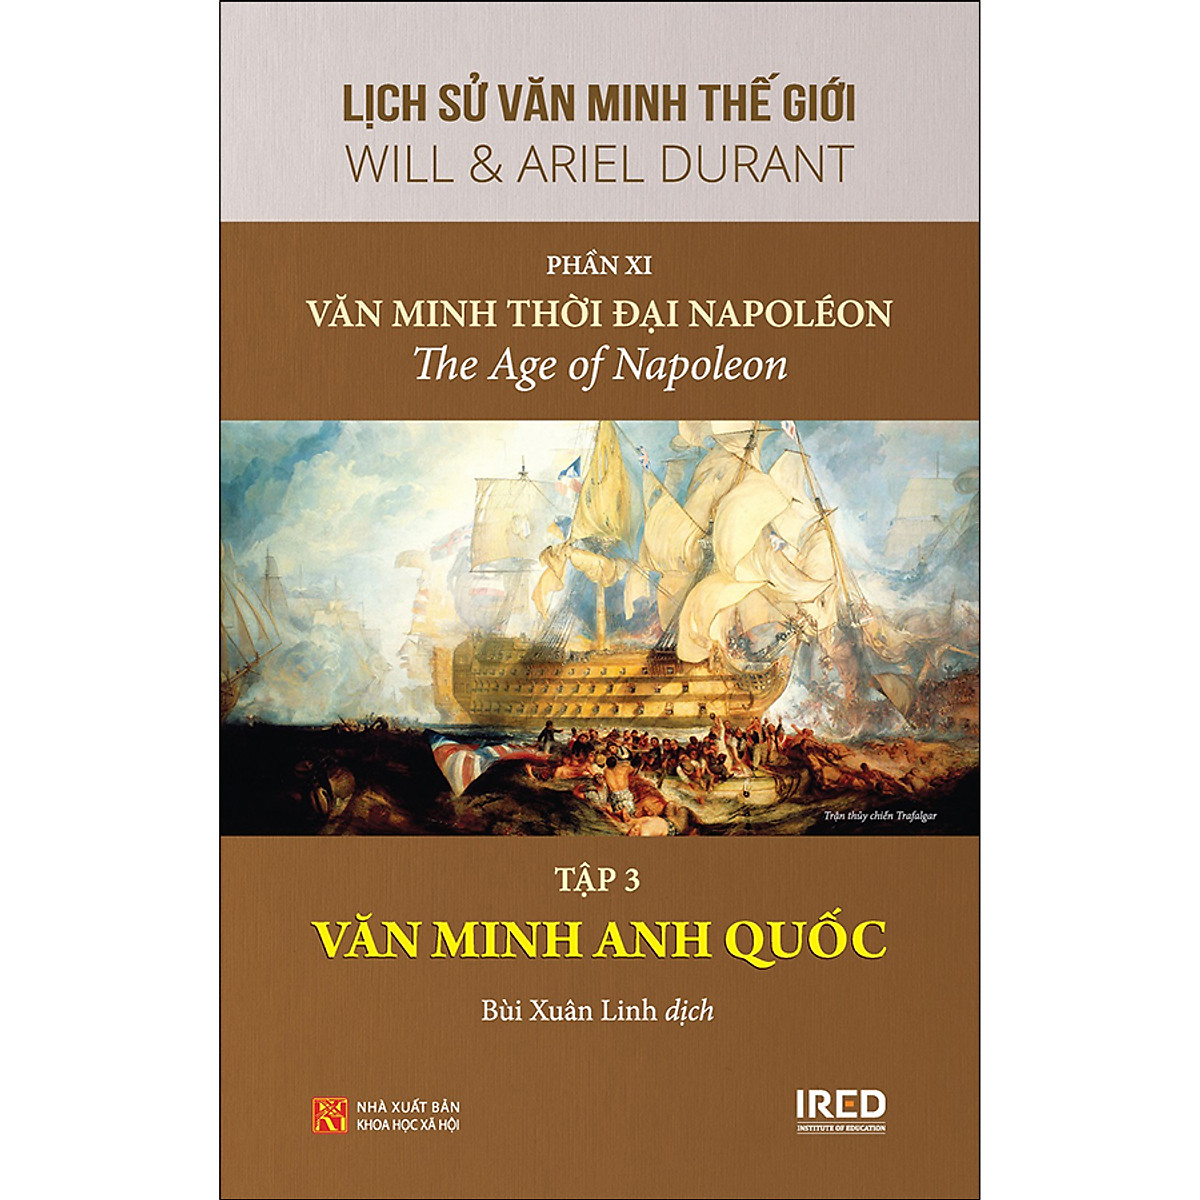 Lịch Sử Văn Minh Thế Giới - Phần XI - Văn Minh Thời Đại Napoléon - Tập 3: Văn Minh Anh Quốc PDF